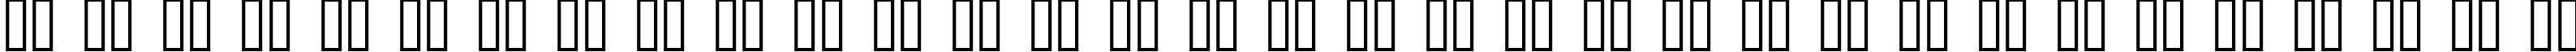 Пример написания русского алфавита шрифтом Pecot Outline